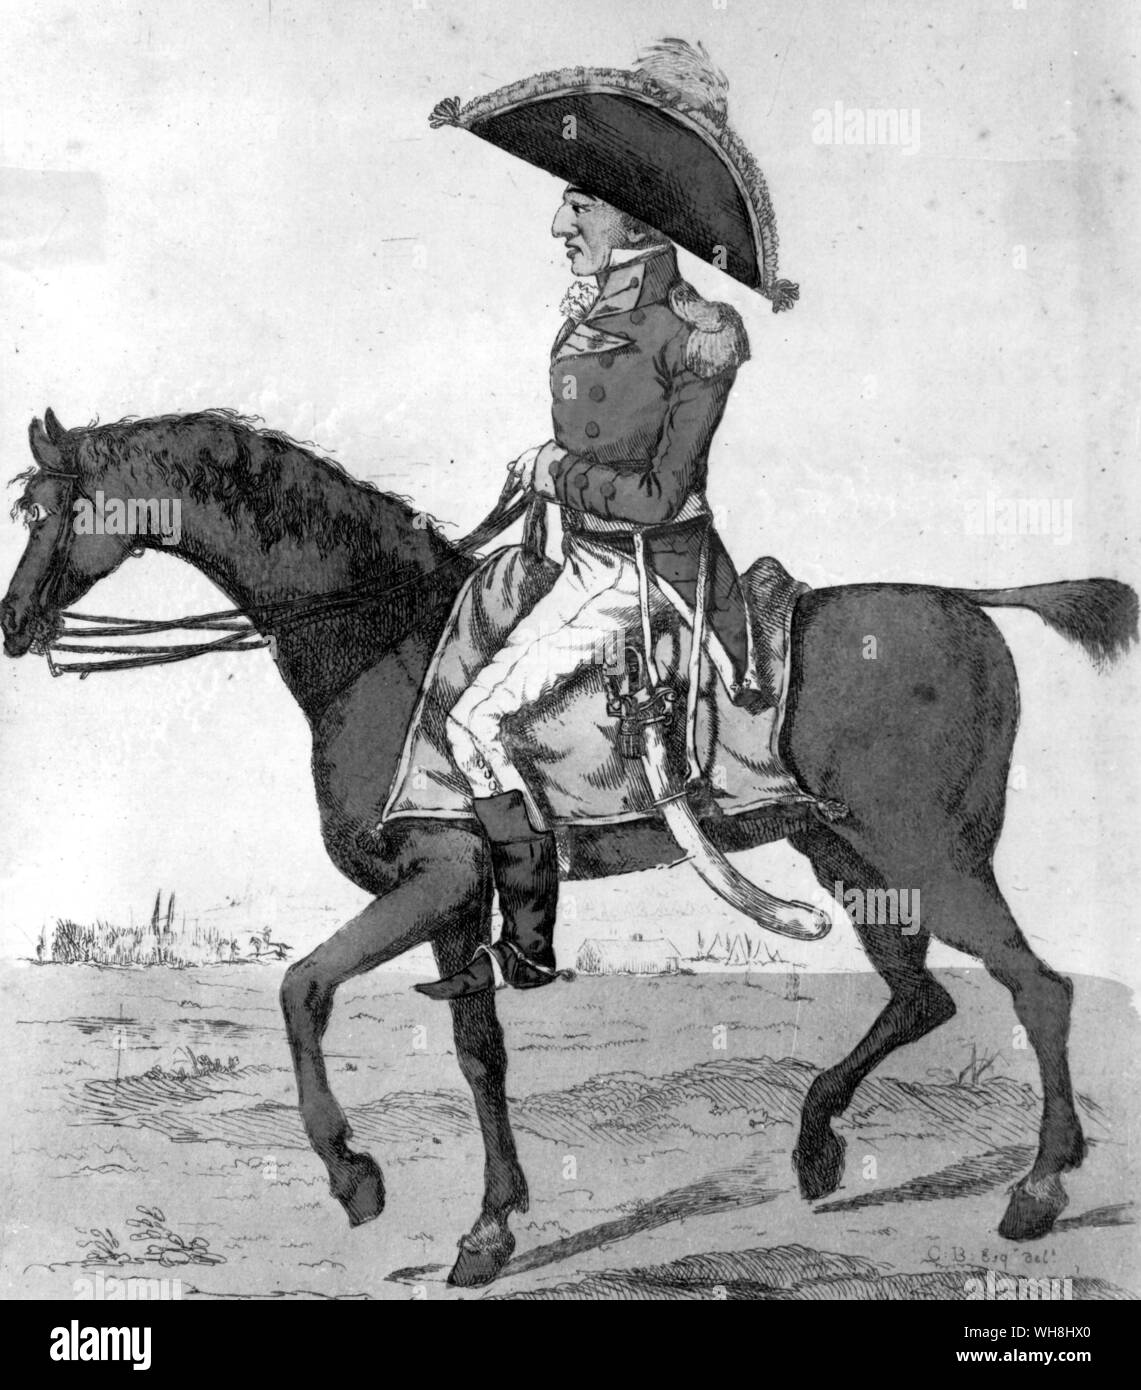 Lord Charles Somerset war der jüngere Sohn des fünften Herzog von Beaufort, der Meister des Pferdes gewesen war. Er erbte die Liebe und Verständnis für die Pferde und eine Persönlichkeit, die den kombinierten Arroganz der Weise, der Hass auf die Opposition, und eine gewisse Rücksichtslosigkeit der Methode. Diese Eigenschaften ermöglichten ihm, innerhalb von 10 Jahren, eine überraschende Verbesserung der Halb-gezüchtet, Kapern und seine Racing. Die eine war nie wieder so gut nach seiner Zeit. Die anderen erst in den 1880er Jahren. Die Geschichte der Pferderennen von Roger Longrigg, Seite 258. Stockfoto